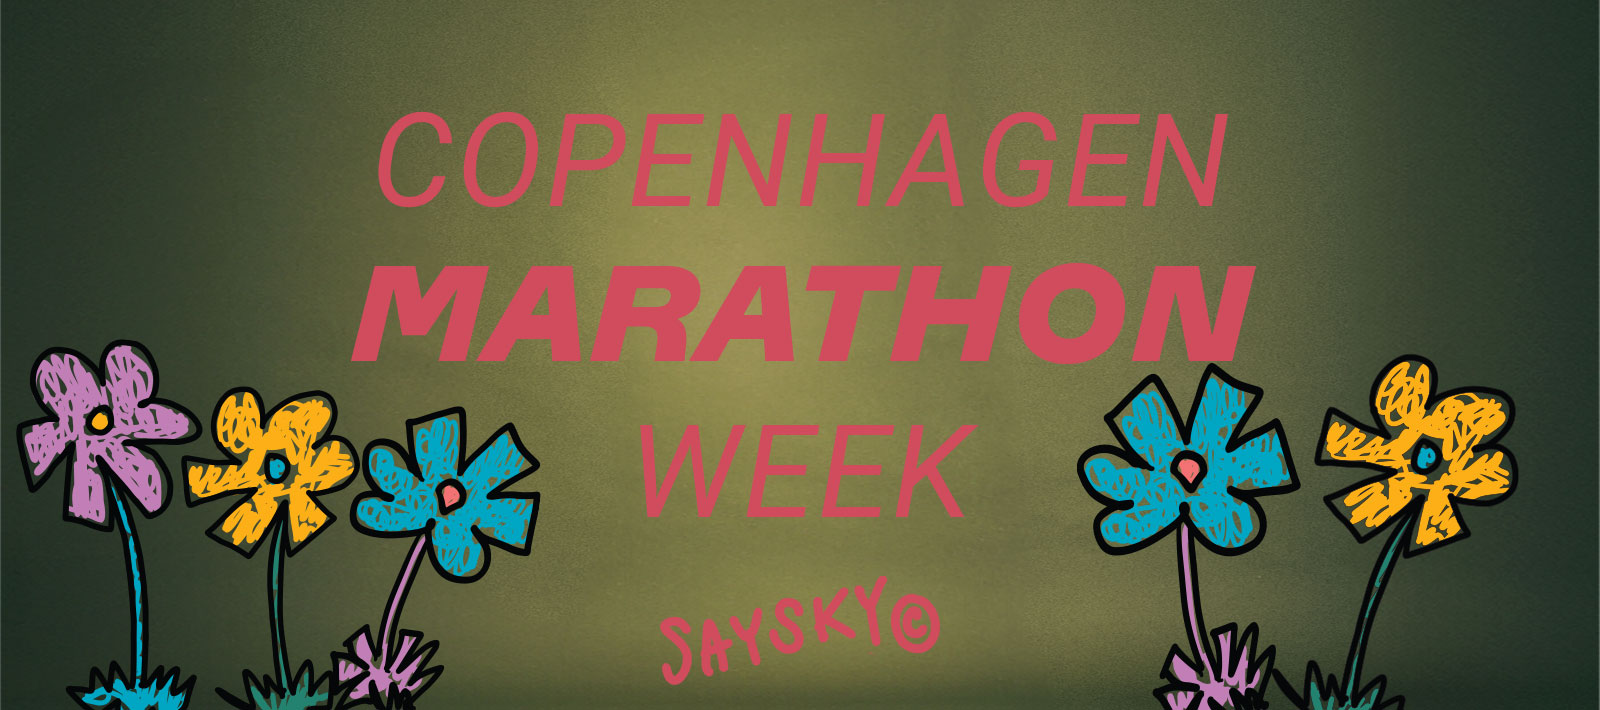 Copenhagen Marathon Week – Saysky.com